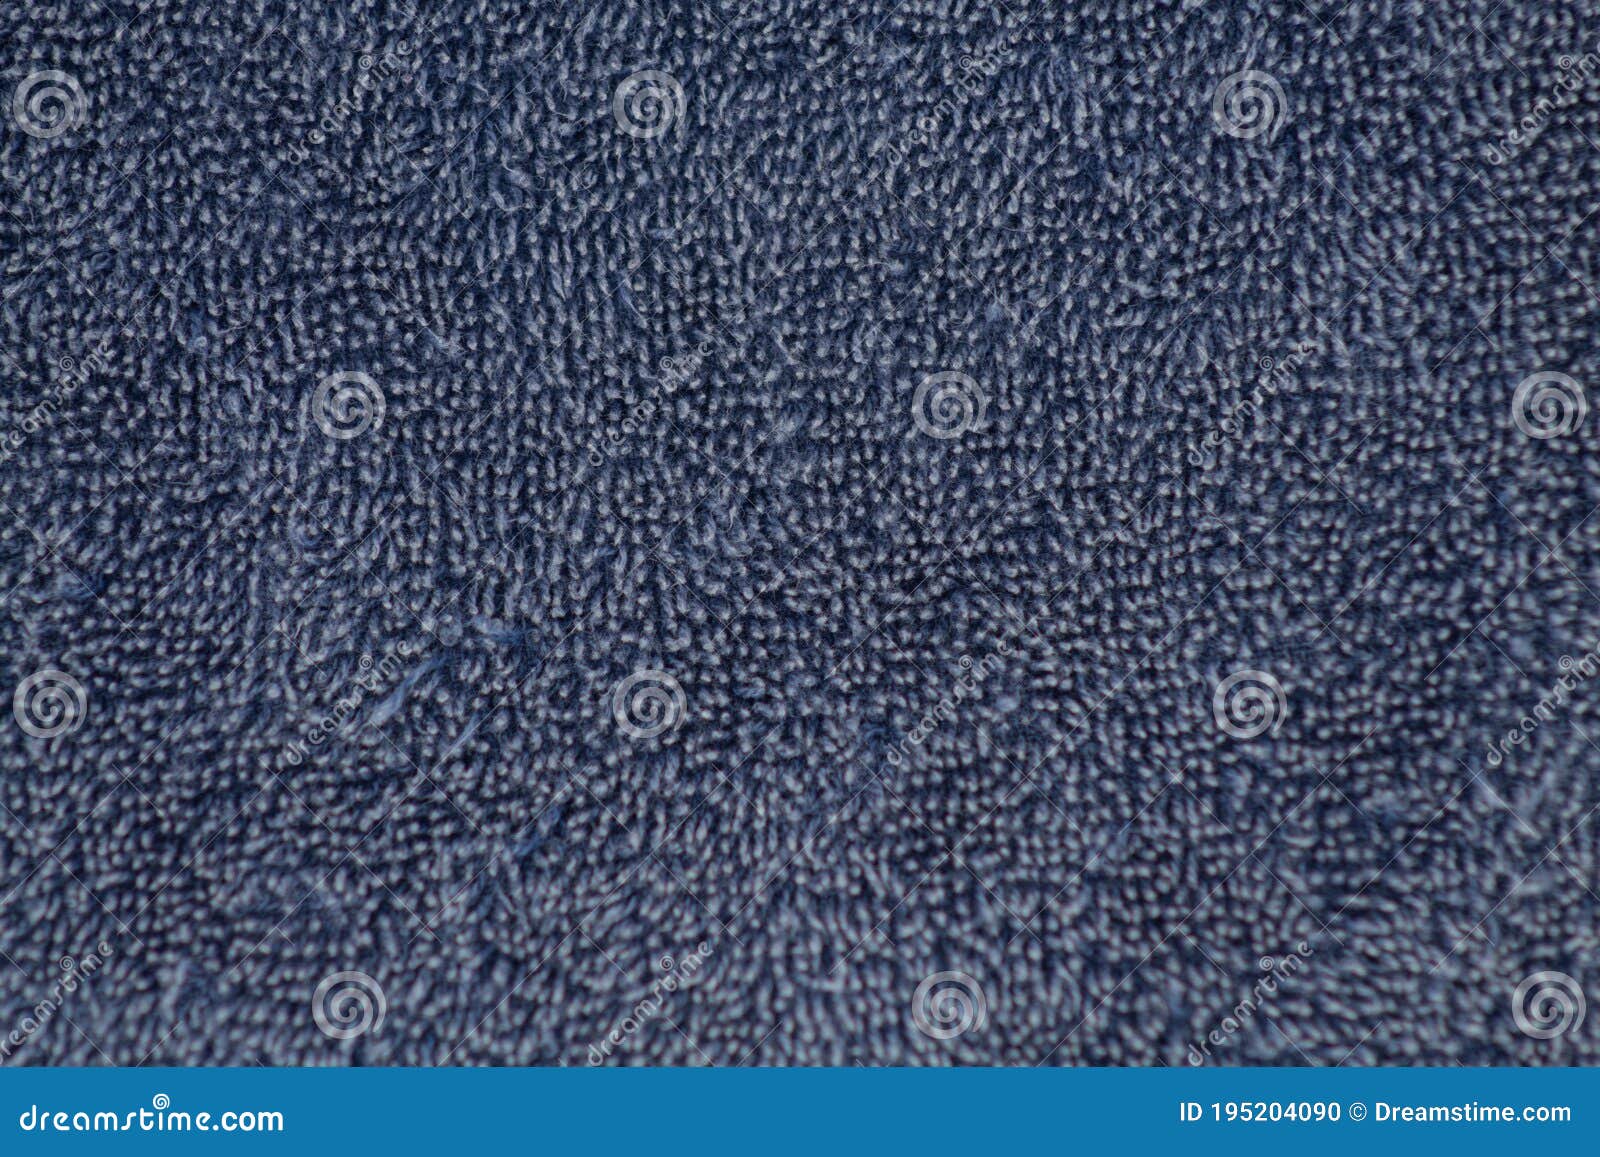 towel texture in dark blue color